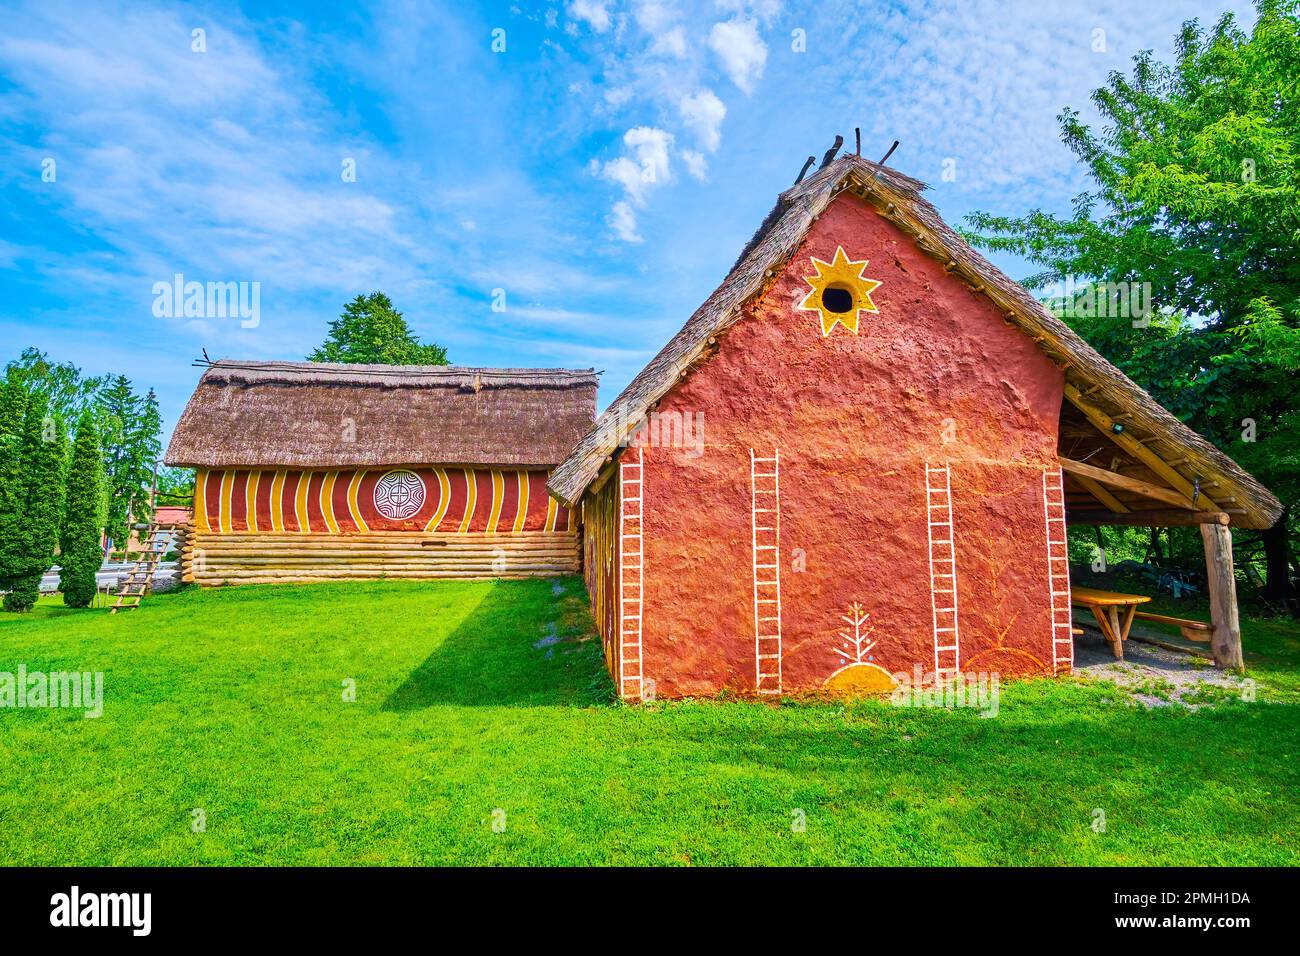 Musée de la culture de Trypil dans le village de Talne avec des maisons en adobe terracota reconstruites, Ukraine Banque D'Images